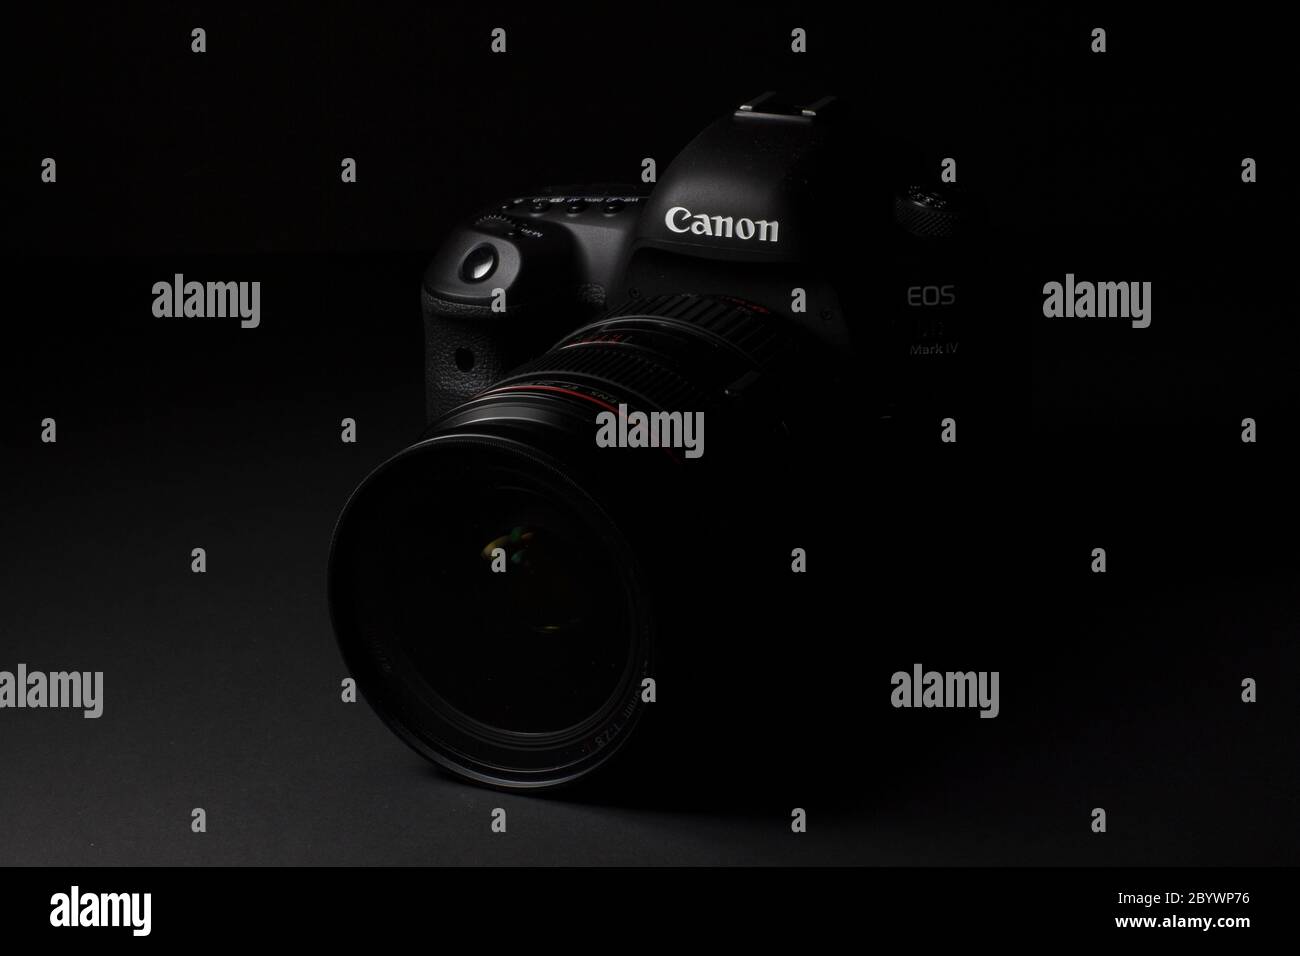 Mailand, Italien - 11. Juni 2020: Nahaufnahme einer Canon EOS 5D Mark IV mit EF 24-70mm 1:2.8 L USM Objektiv, die auf schwarzem Hintergrund aufliegt. Stockfoto